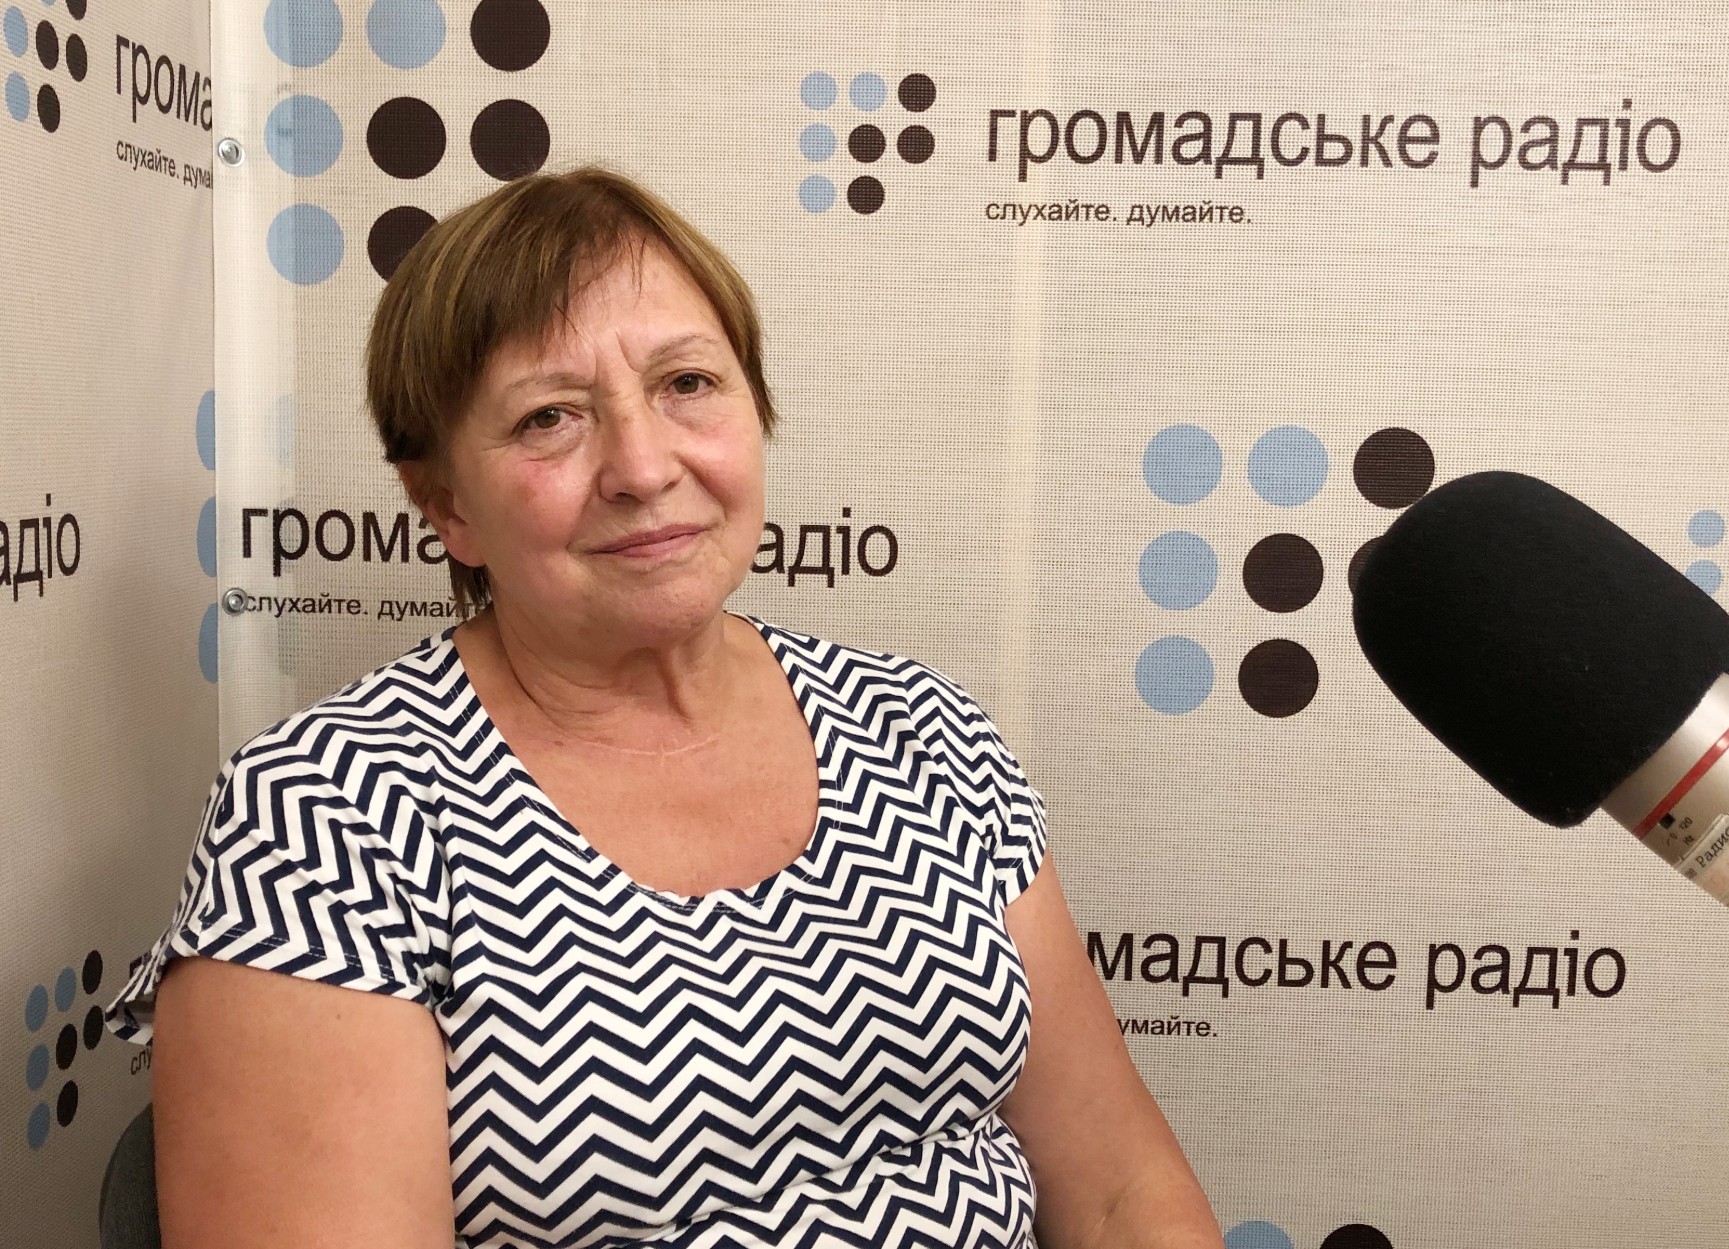 Нина Брановицкая: ЕСПЧ спрашивает, что в Украине сделано по расследованию убийства моего сына, а ответить им ничего